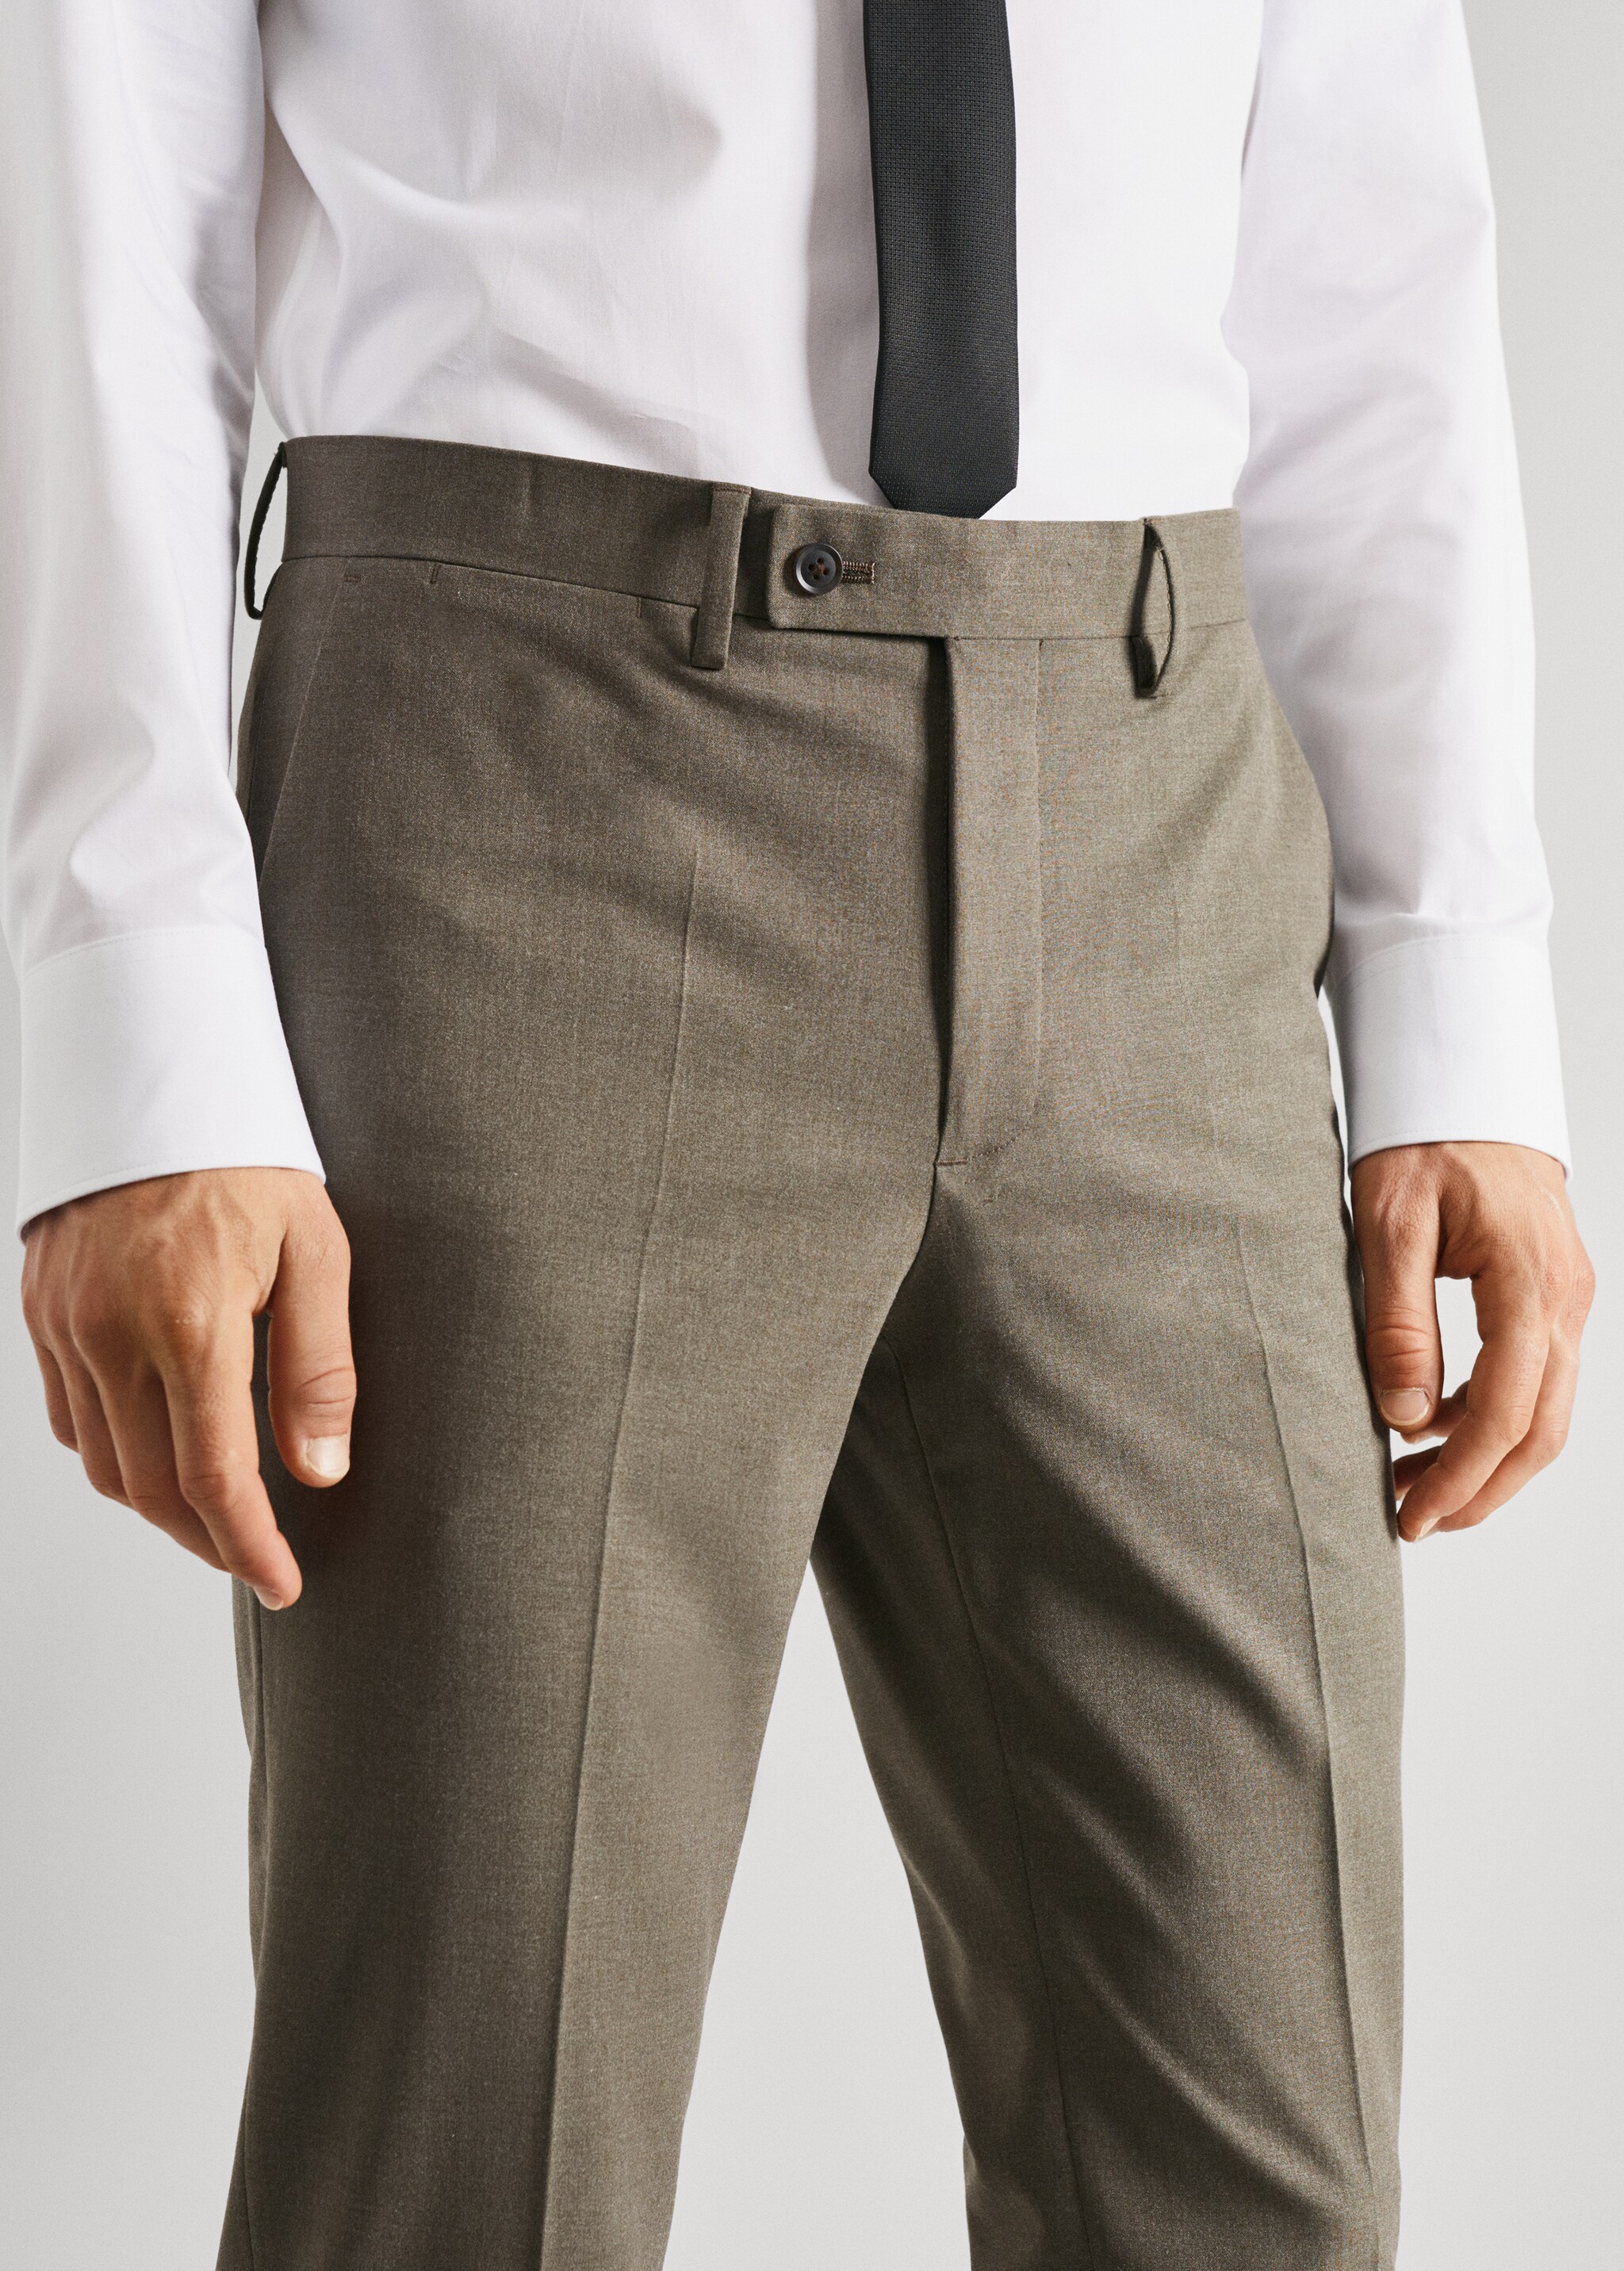 Pantalón traje slim fit - Detalle del artículo 1